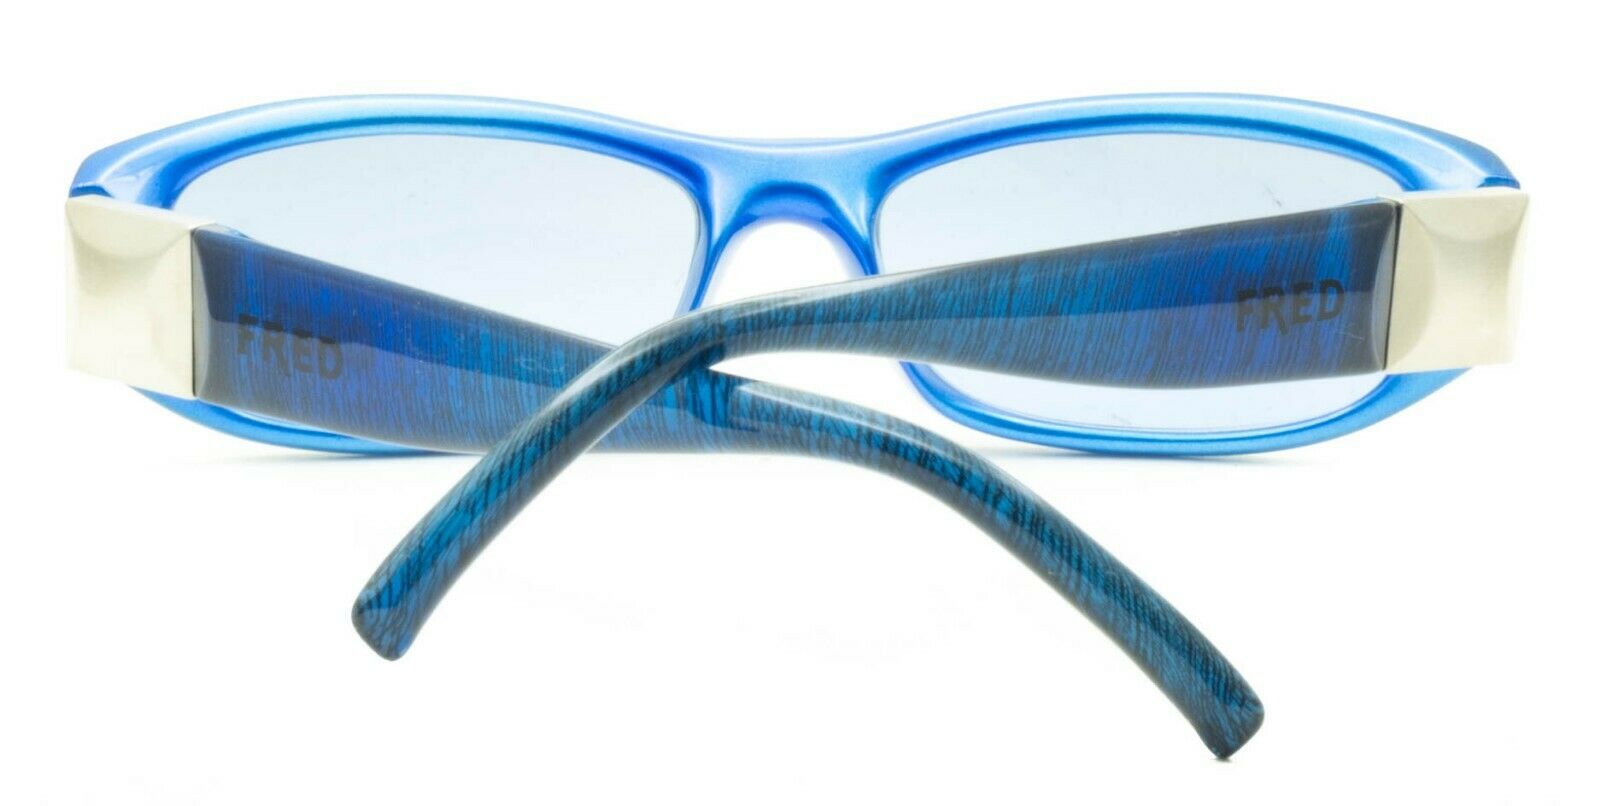 FRED LUNETTES CUT S5 Col 008 52mm Sunglasses Shades Eyewear New BNIB - France